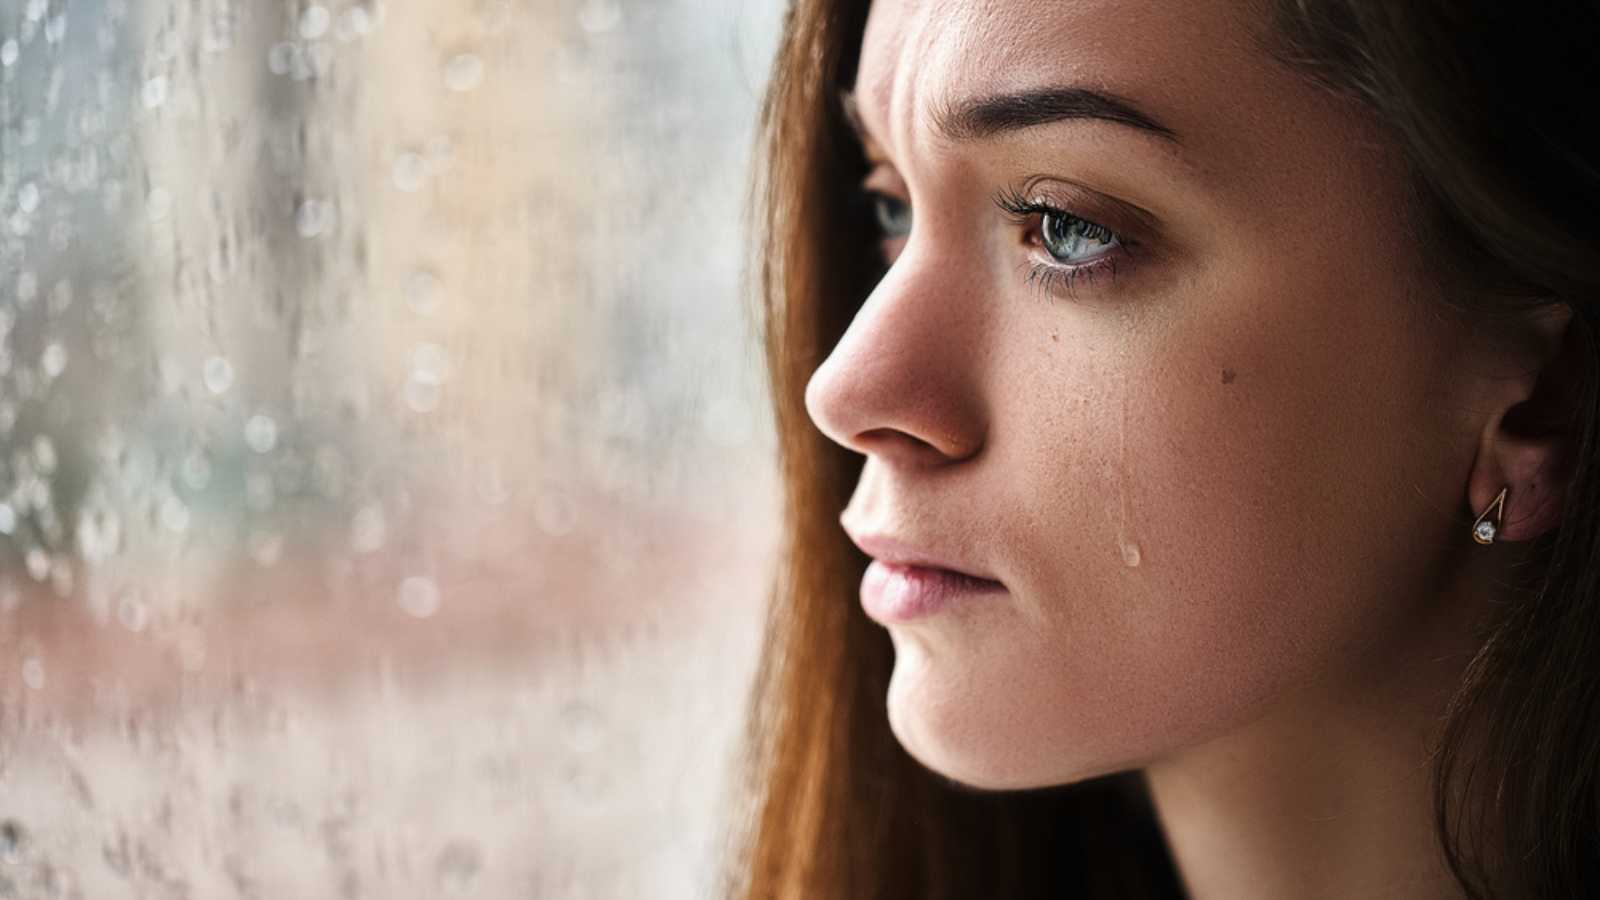 Sad woman crying